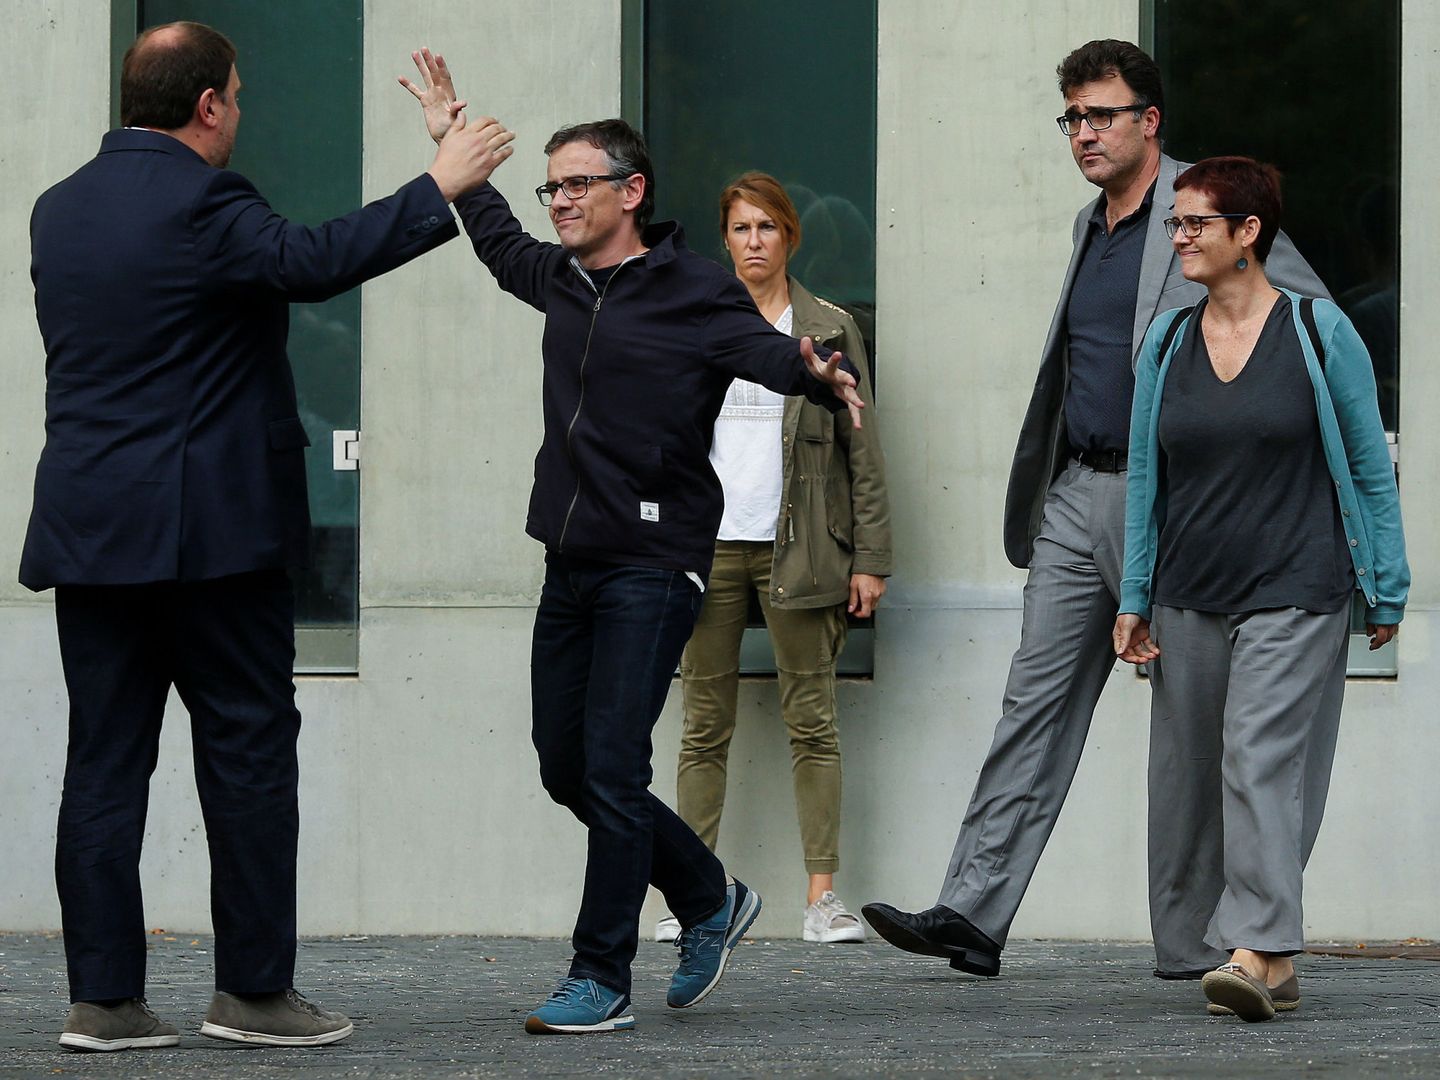 Jové (centro), tras ser puesto en libertad por la operación Anubis, se dirige a abrazar a Oriol Junqueras (izda.). (Reuters)